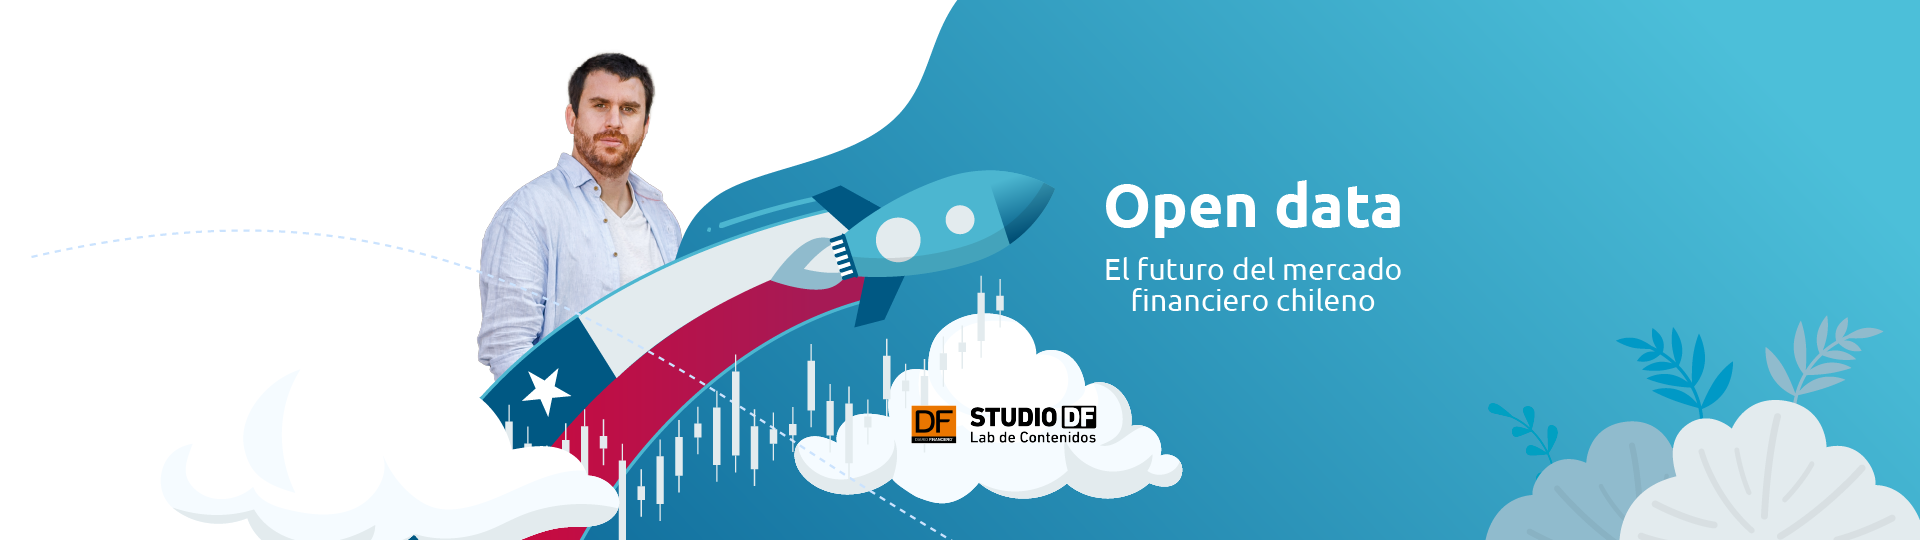 open data fapro max ortiz diario financiero